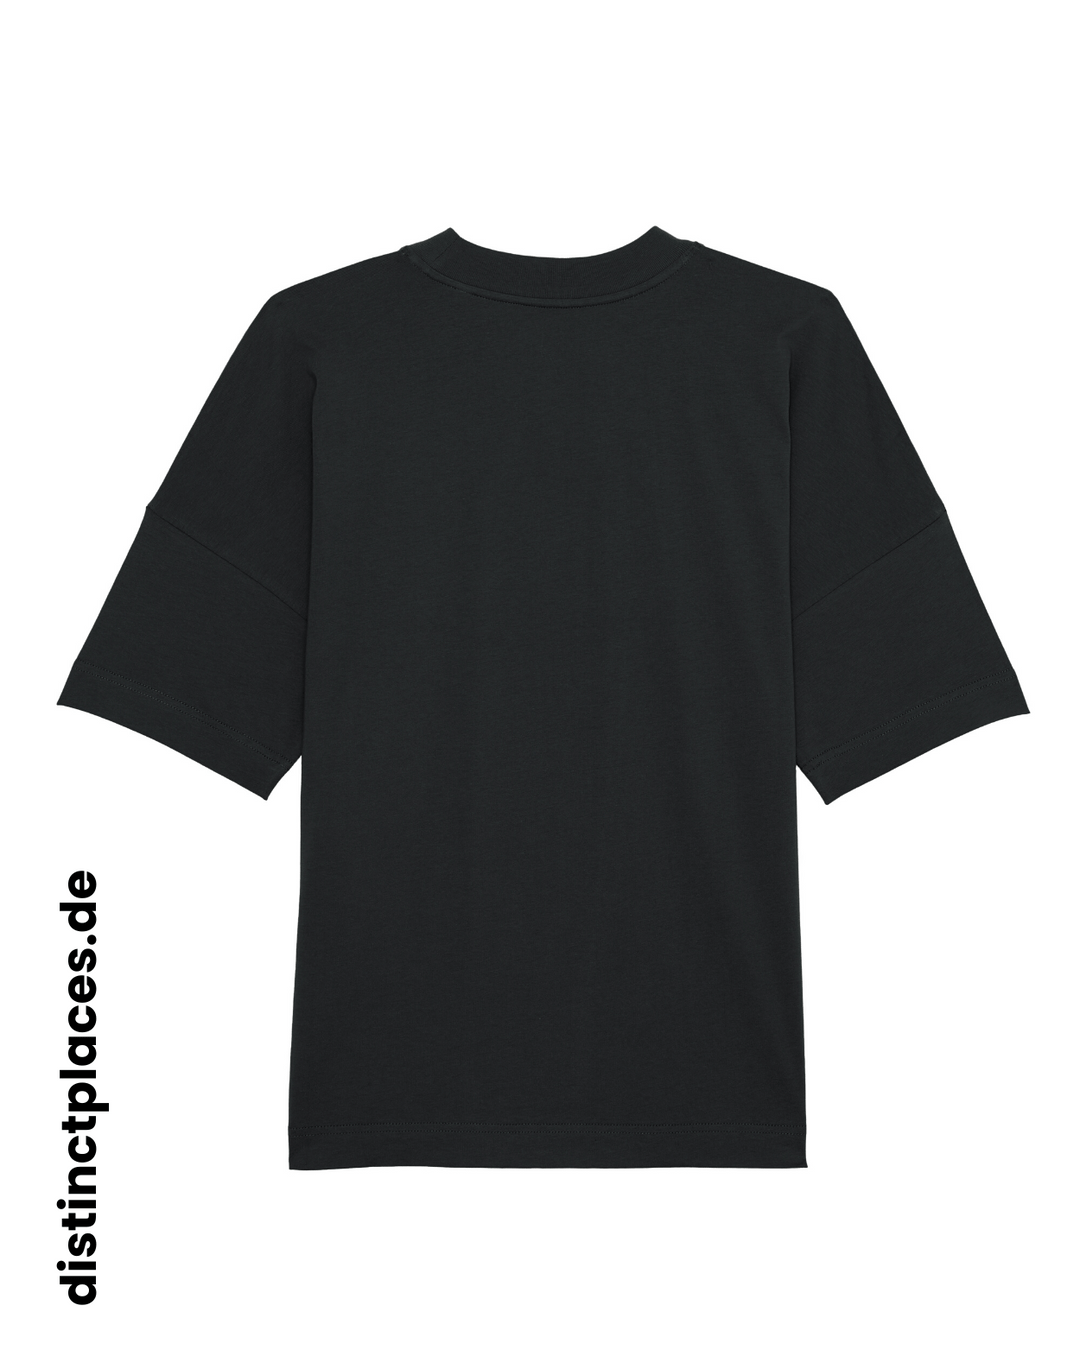 Schwarzes fairtrade, vegan und bio-baumwoll Oversized T-Shirt von hinten mit einem minimalistischem weißen Logo, beziehungsweise Schriftzug für Frankfurt